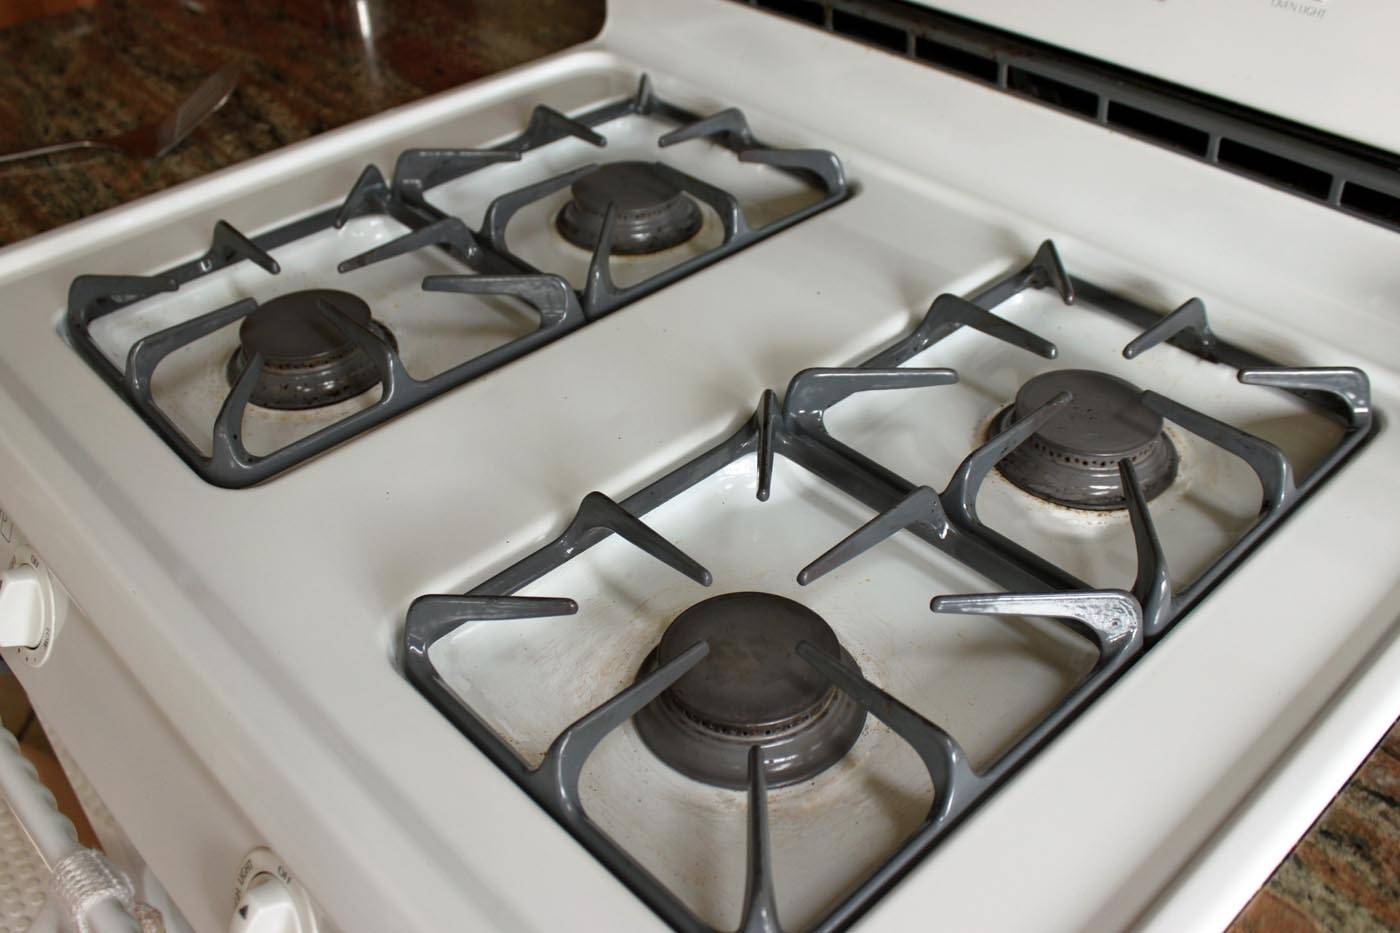 Как убрать нагар: с электрической и газовой плиты, чем можно очистить гарь с посуды, микроволновки, противня в домашних условиях?